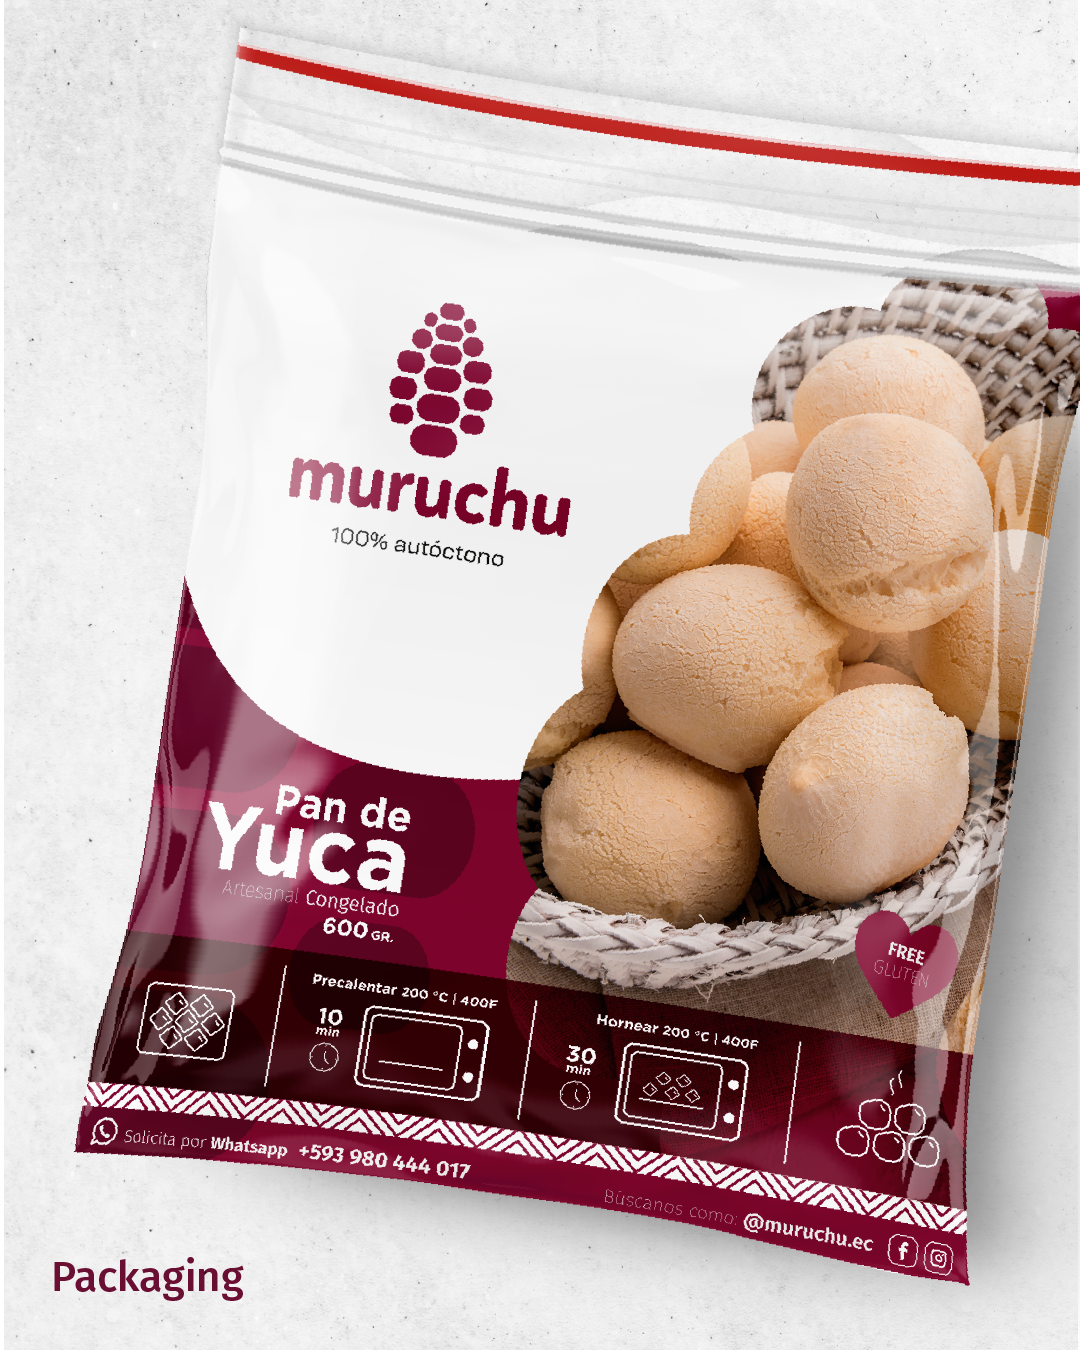 Muruchu-Brand-Packagin-PanDeYuca-1